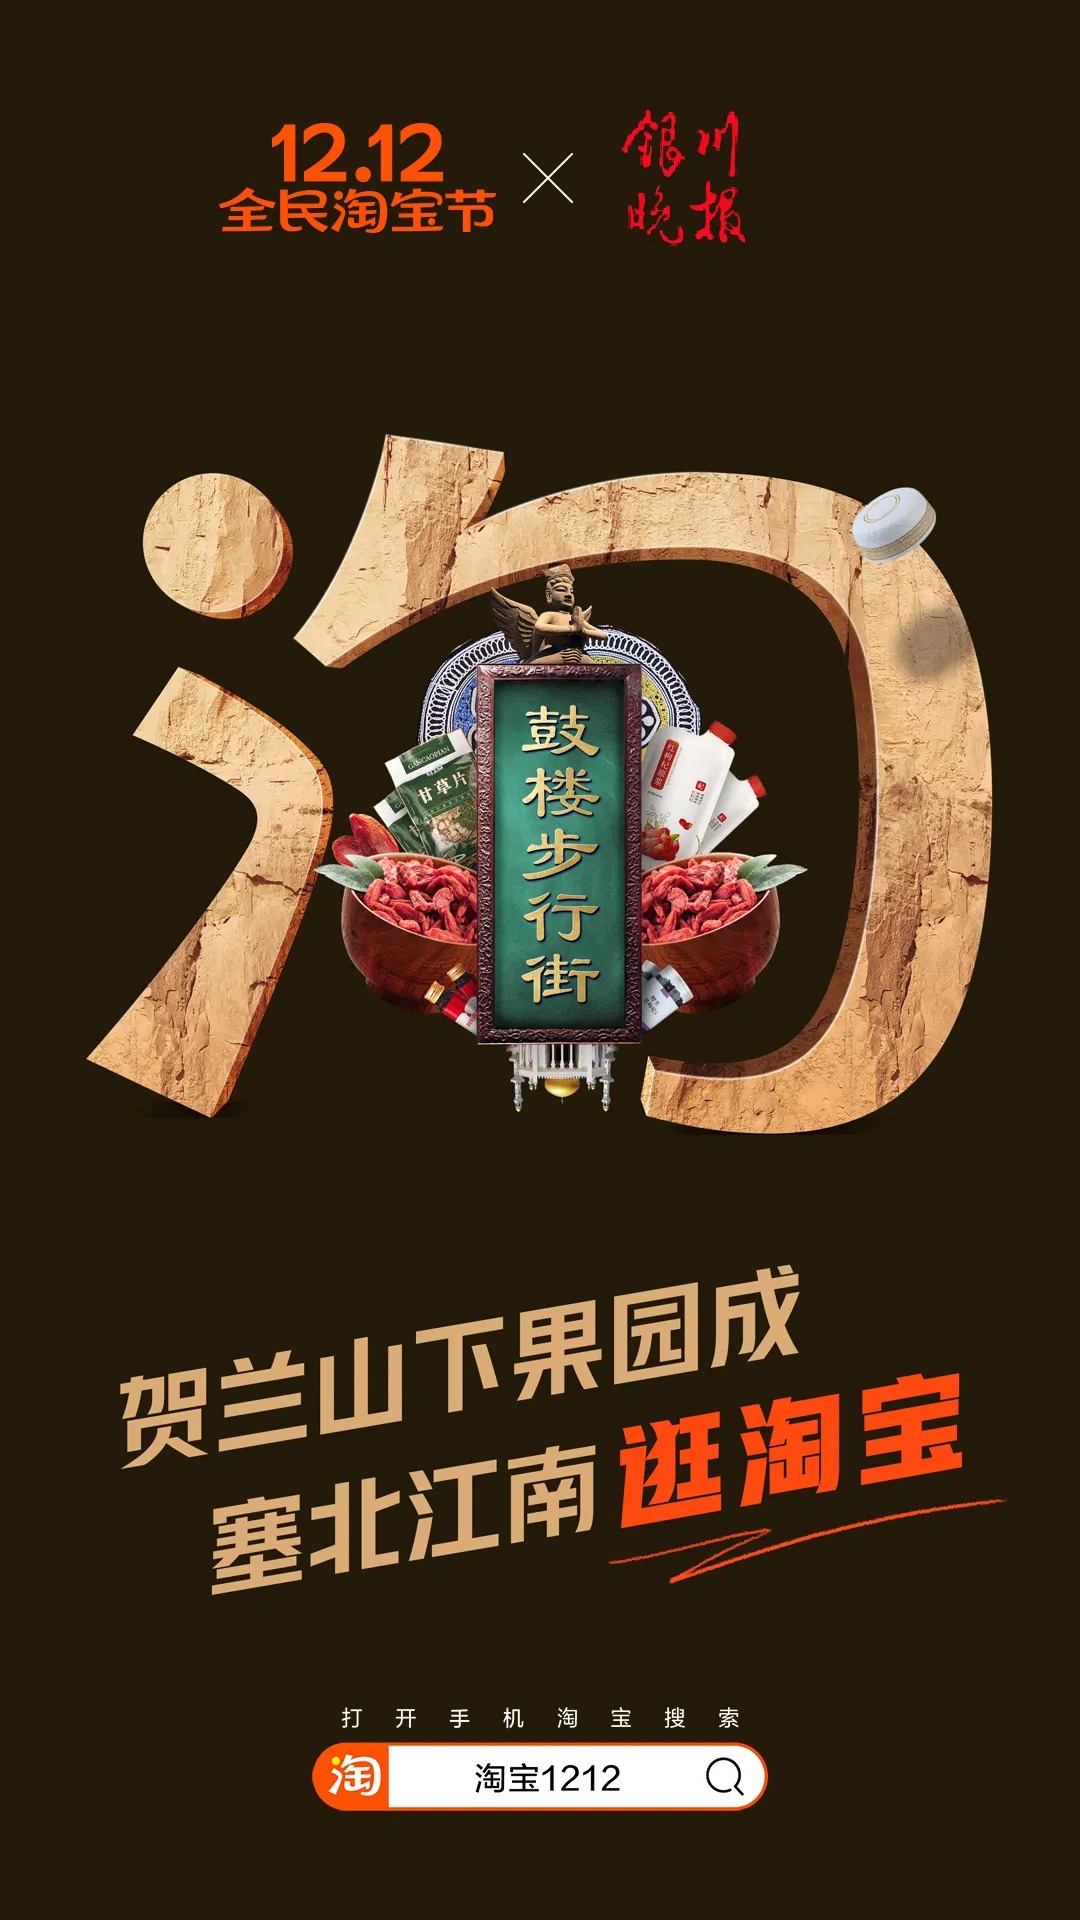 以中国34个省市为主题，淘宝双12海报设计